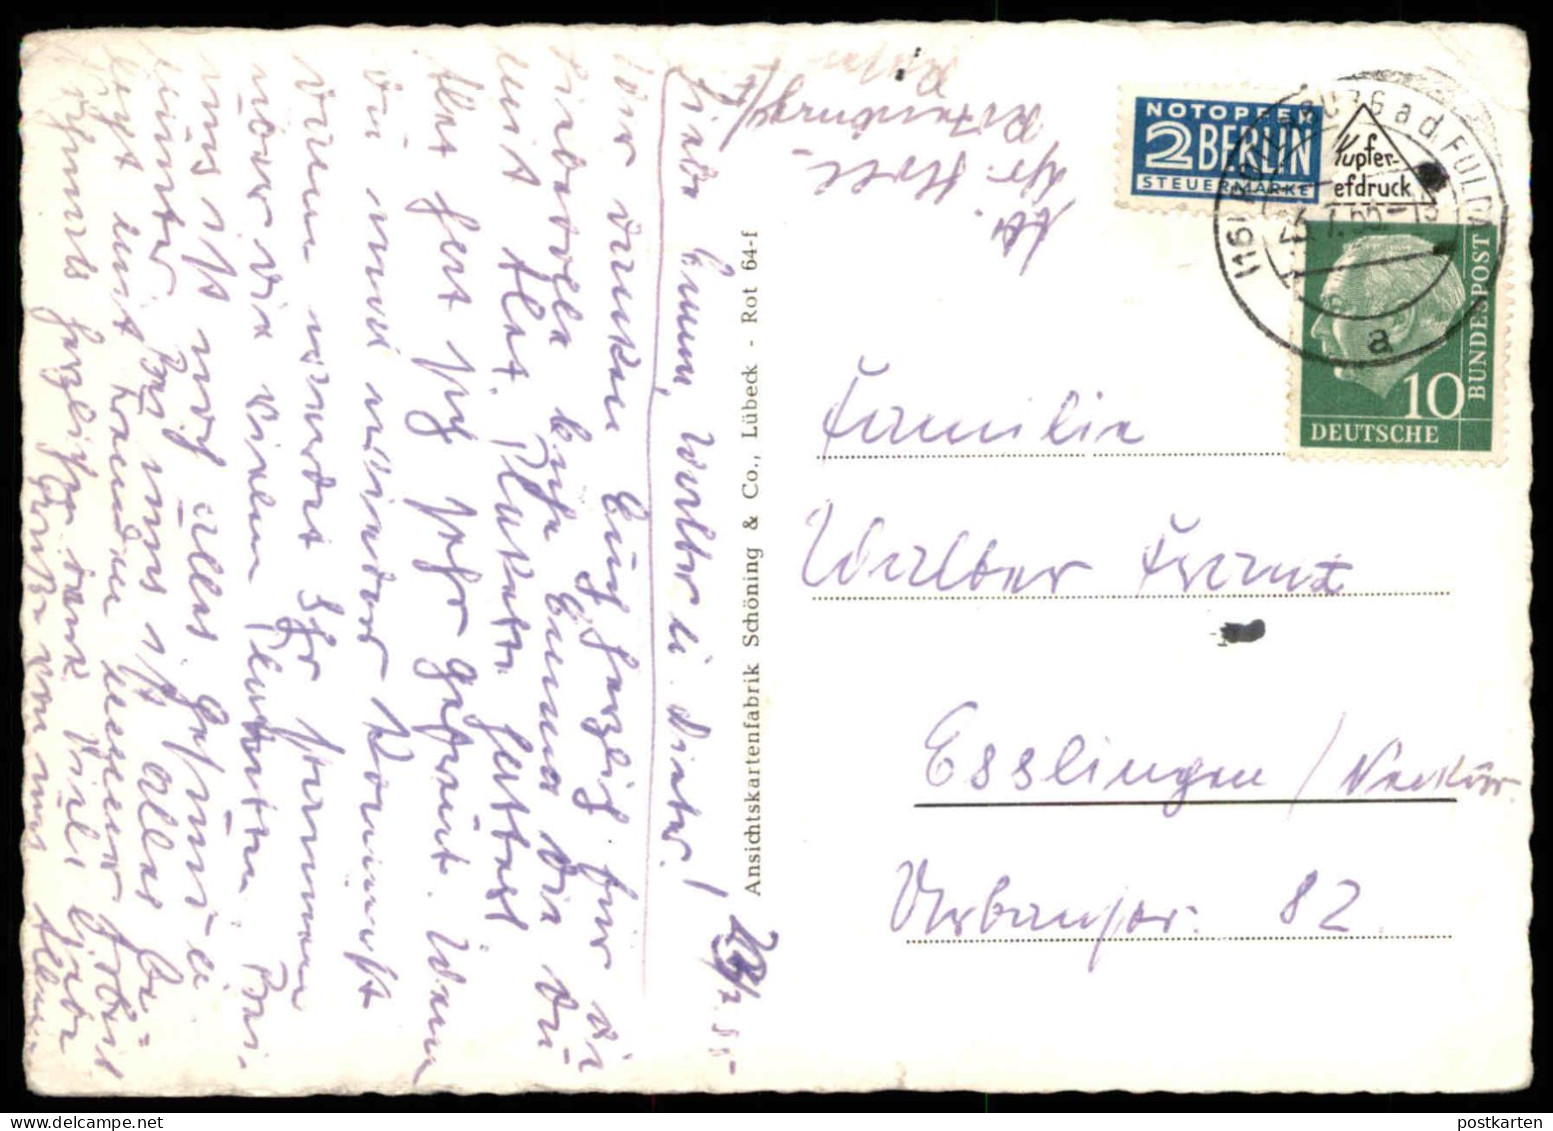 ÄLTERE POSTKARTE ROTENBURG AN DER FULDA KREISKRANKENHAUS KRANKENHAUS HOSPITAL Ansichtskarte AK Cpa Postcard - Rotenburg